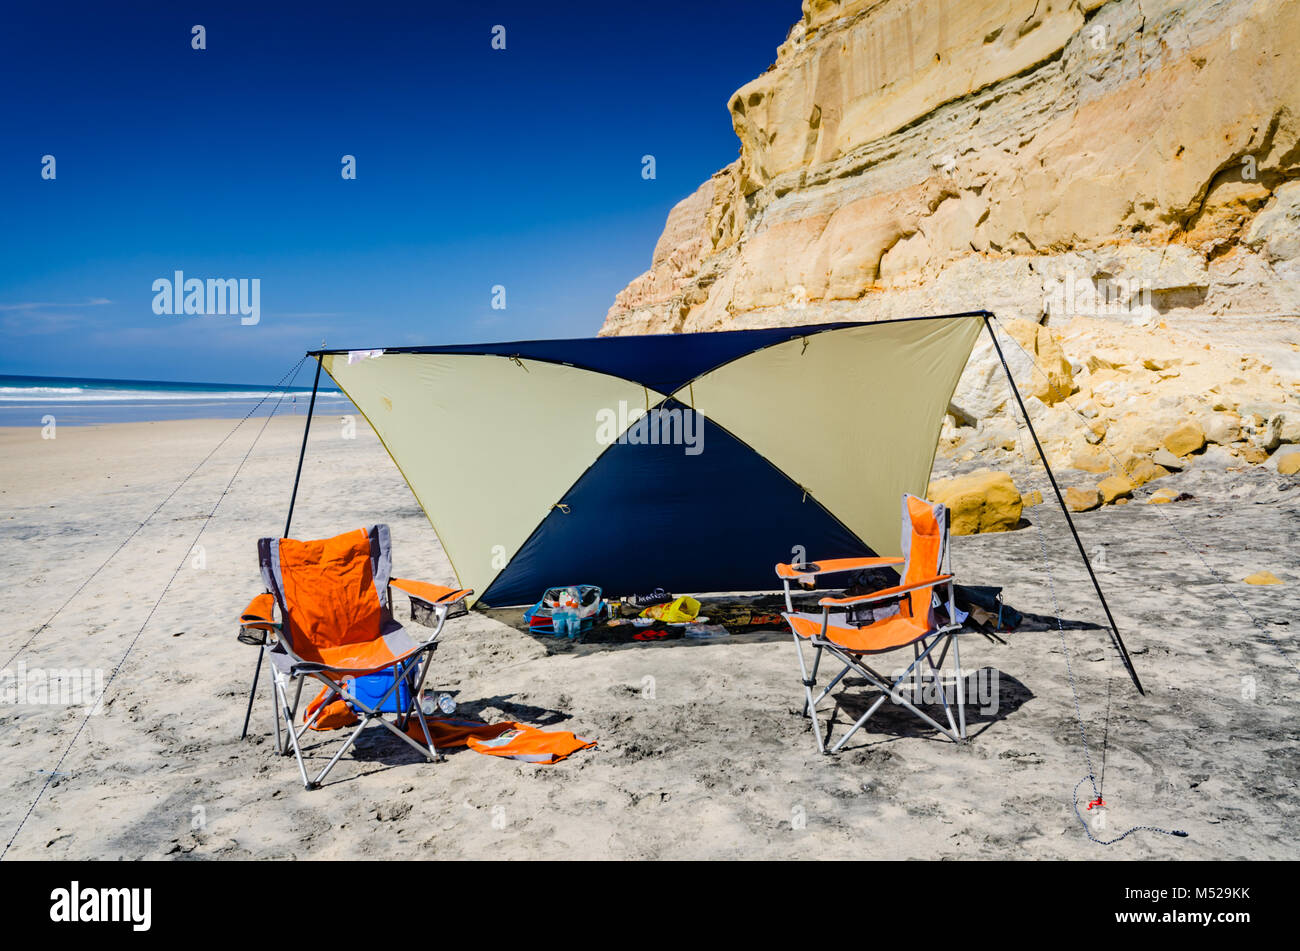 Zelt Unterstände Picknick am Strand von Torrey Pines State Naturpark in der Nähe von San Diego, Kalifornien. Stockfoto